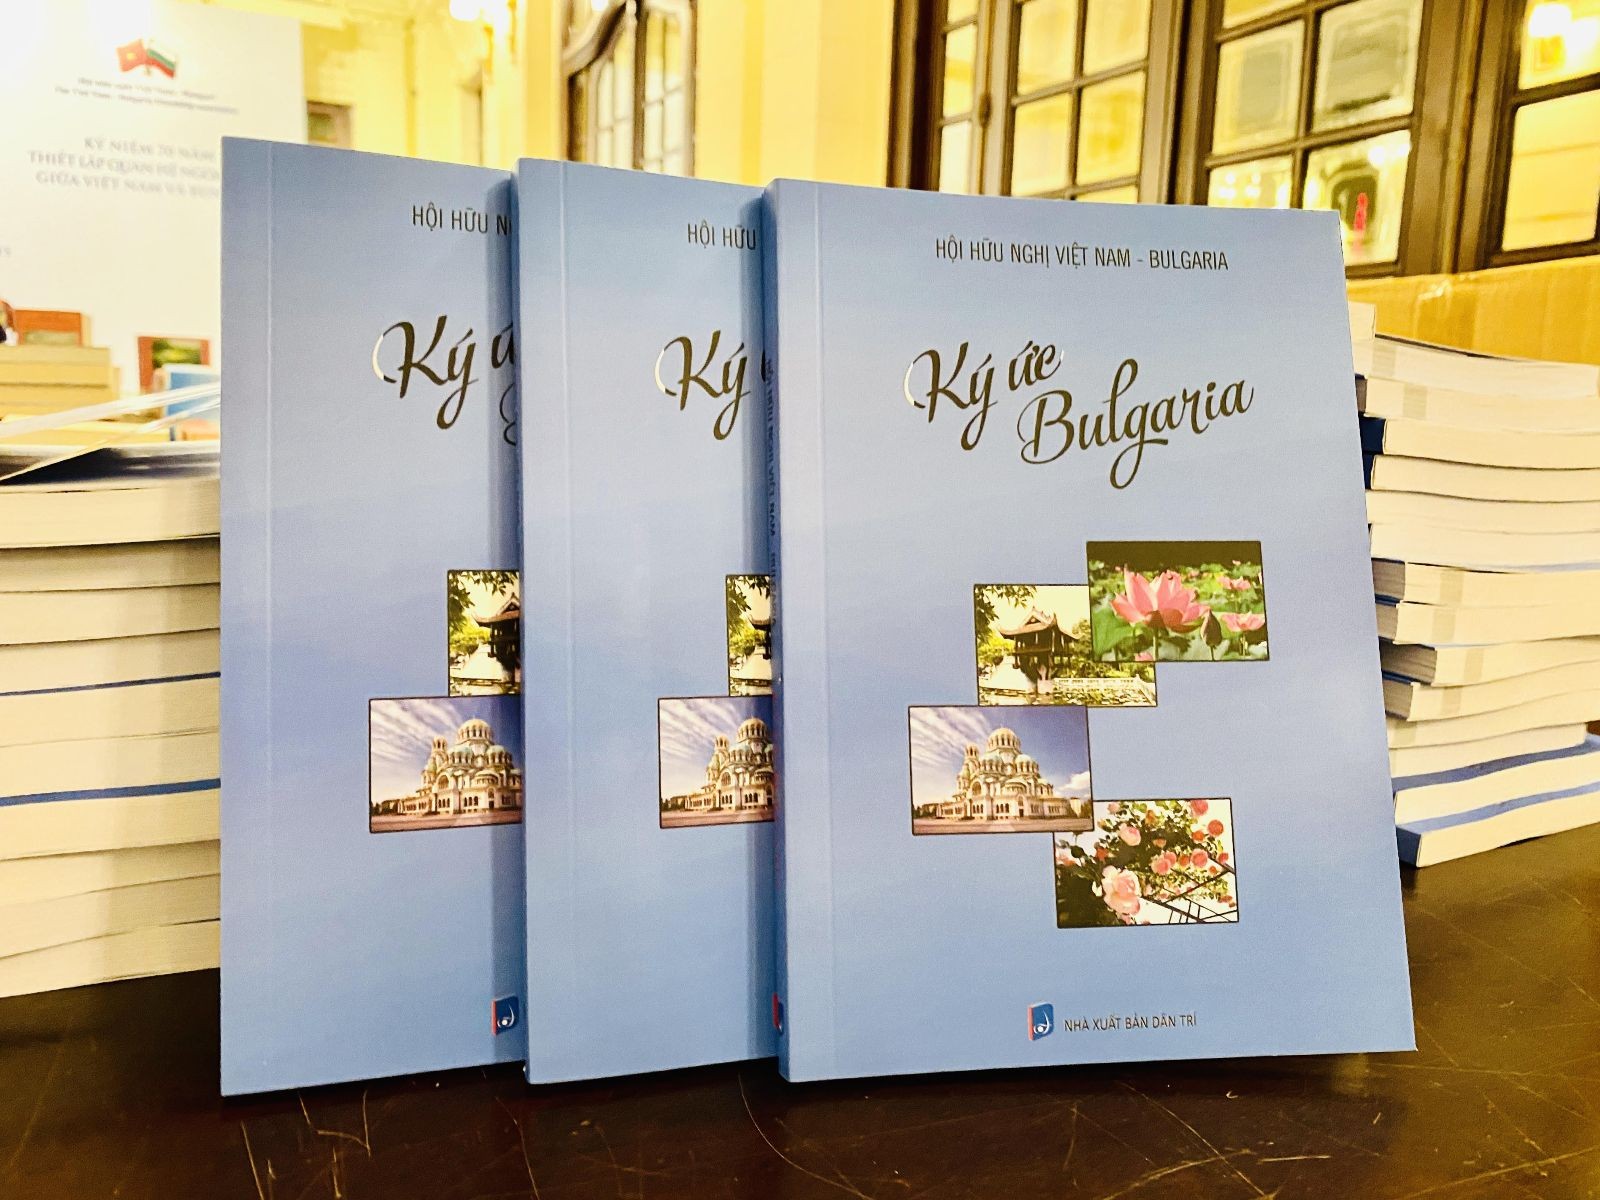 sách Ký ức Bungari do Hội hữu nghị Việt Nam - Bungari biên tập và xuất bản.